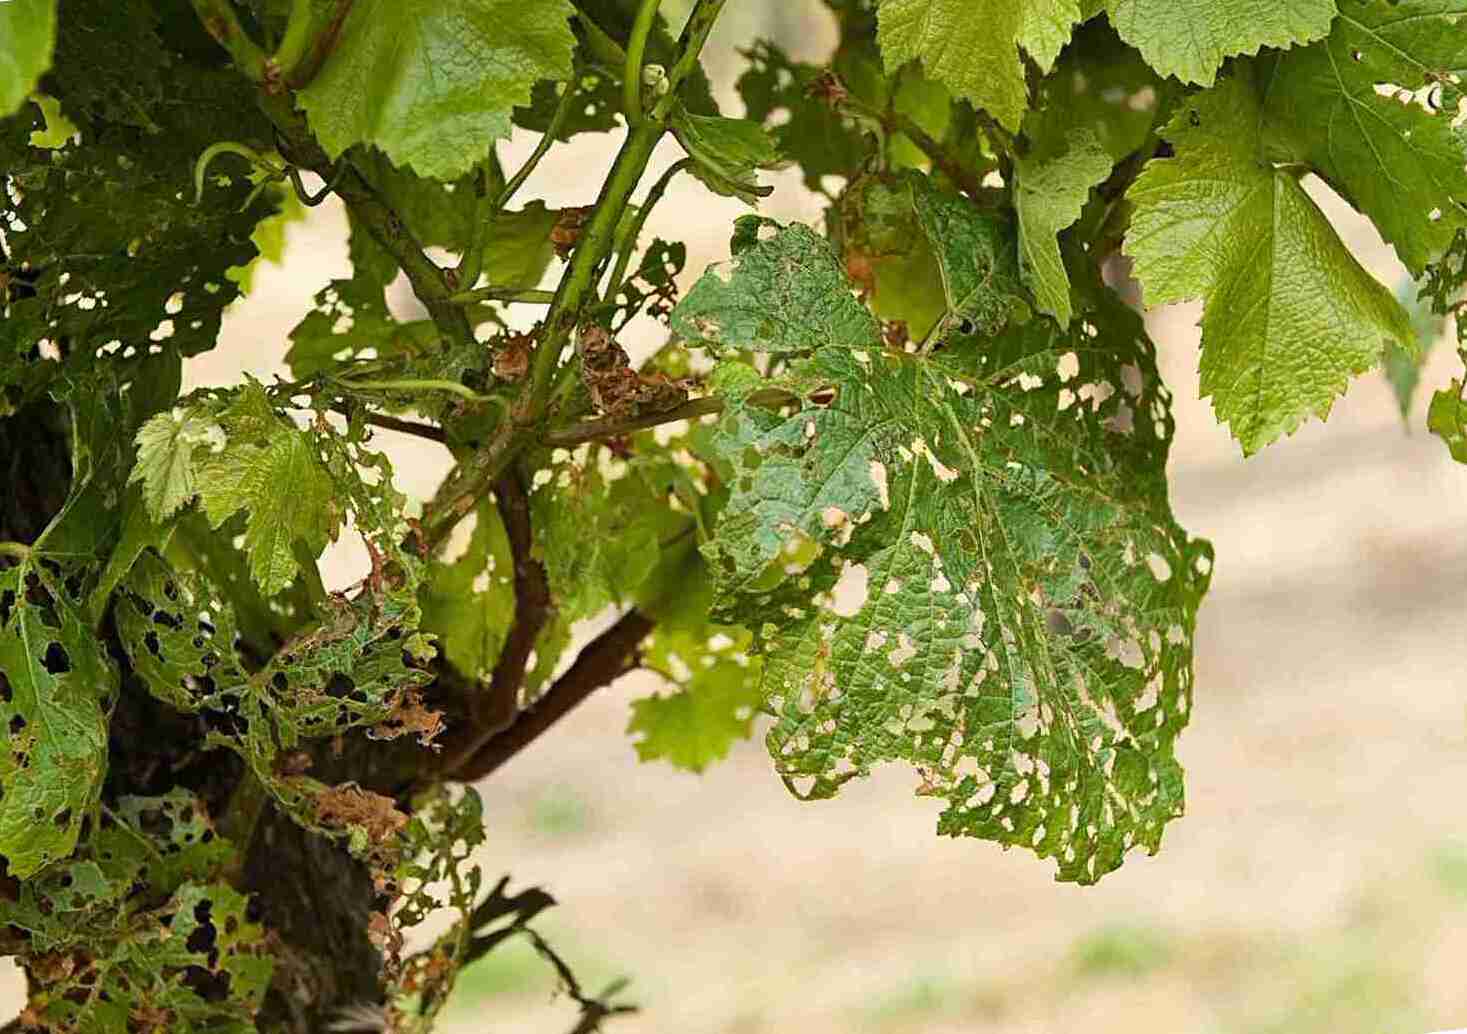 Обработка винограда весной от болезней и вредителей